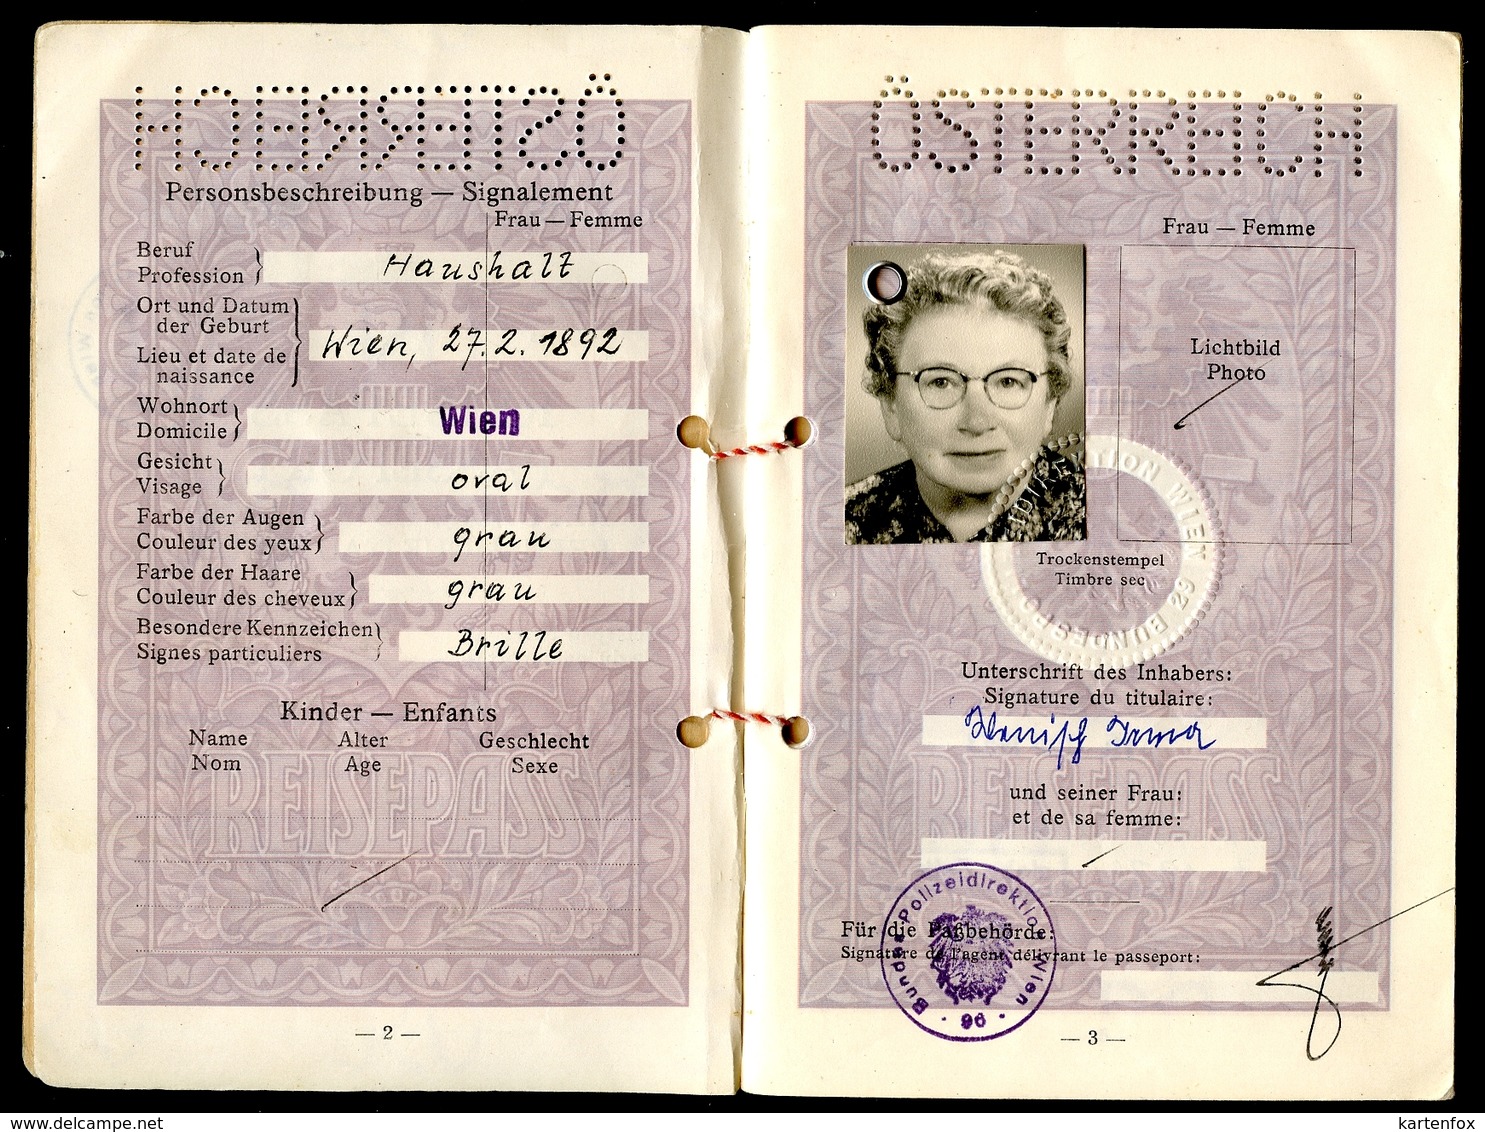 Reisepass Österreich, 2 Stück, Ehepaar, 1953, 1963, Ahnenpass und Blutblatt